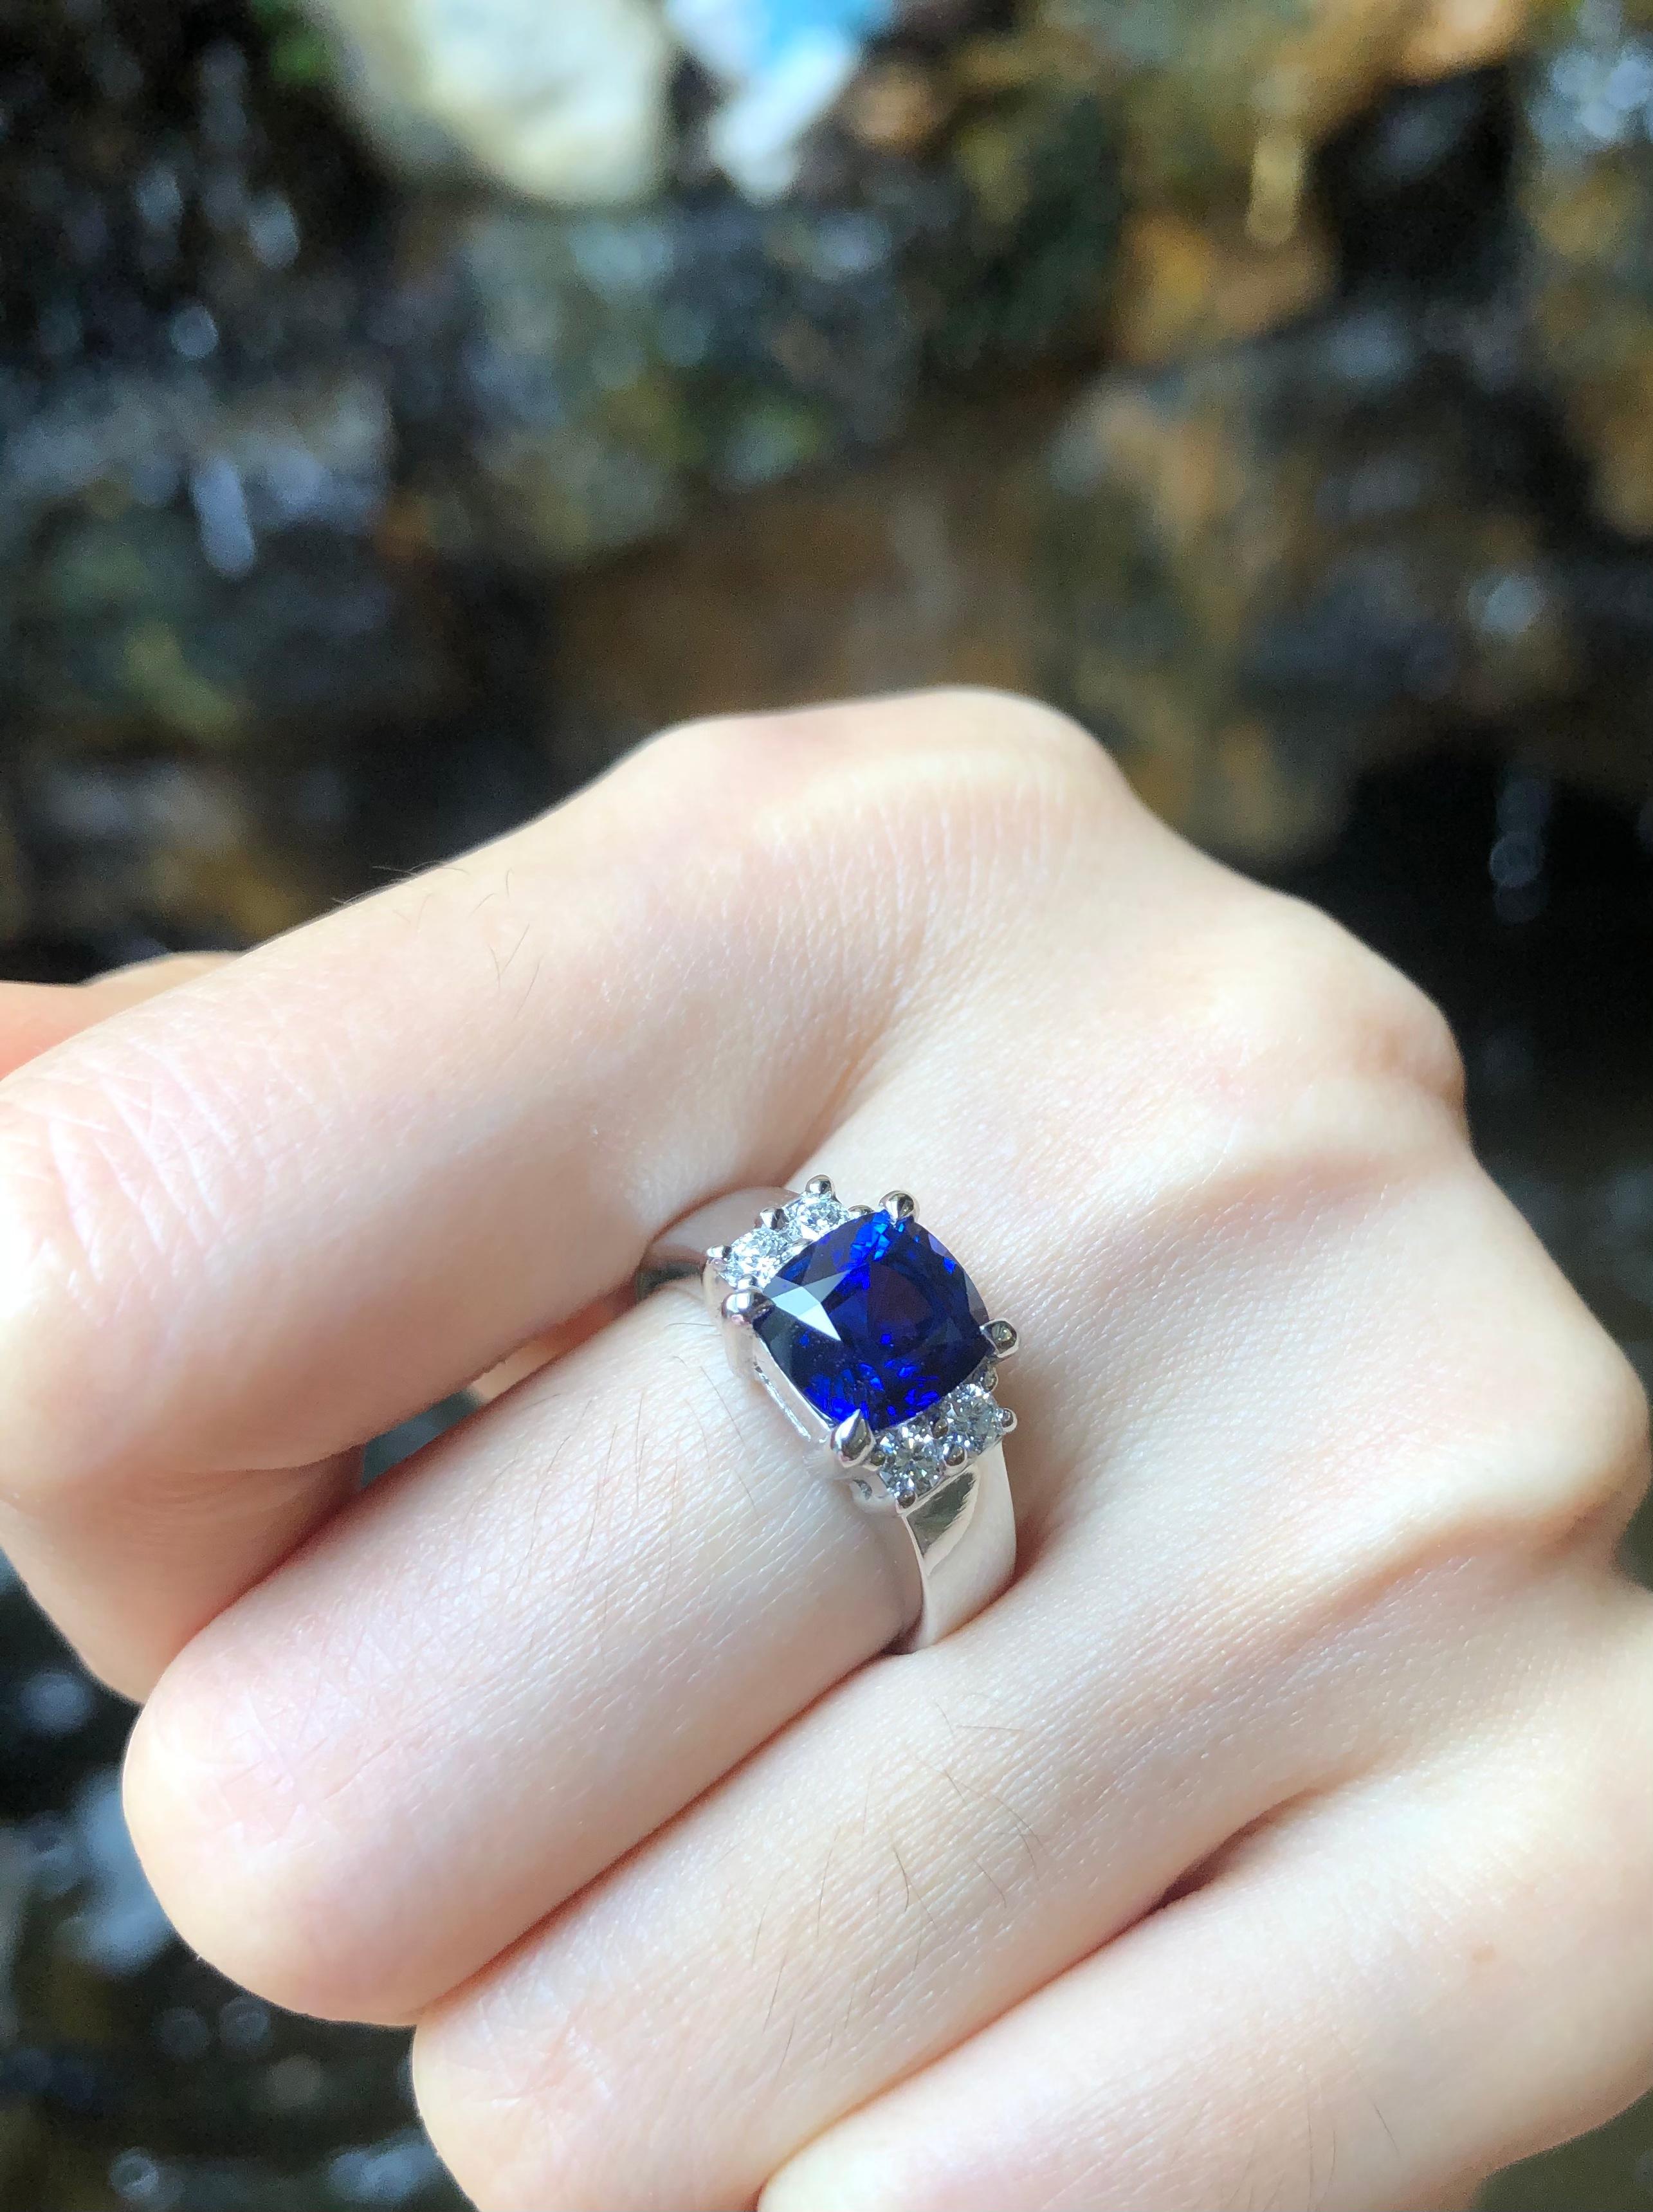 Bague en saphir bleu royal 3,06 carats et diamant 0,23 carat sertie de platine 950
(Rapport Bellerophon Gemlab)

Largeur :  0.7 cm 
Longueur : 0,8 cm
Taille de l'anneau : 54
Poids total : 12 grammes

